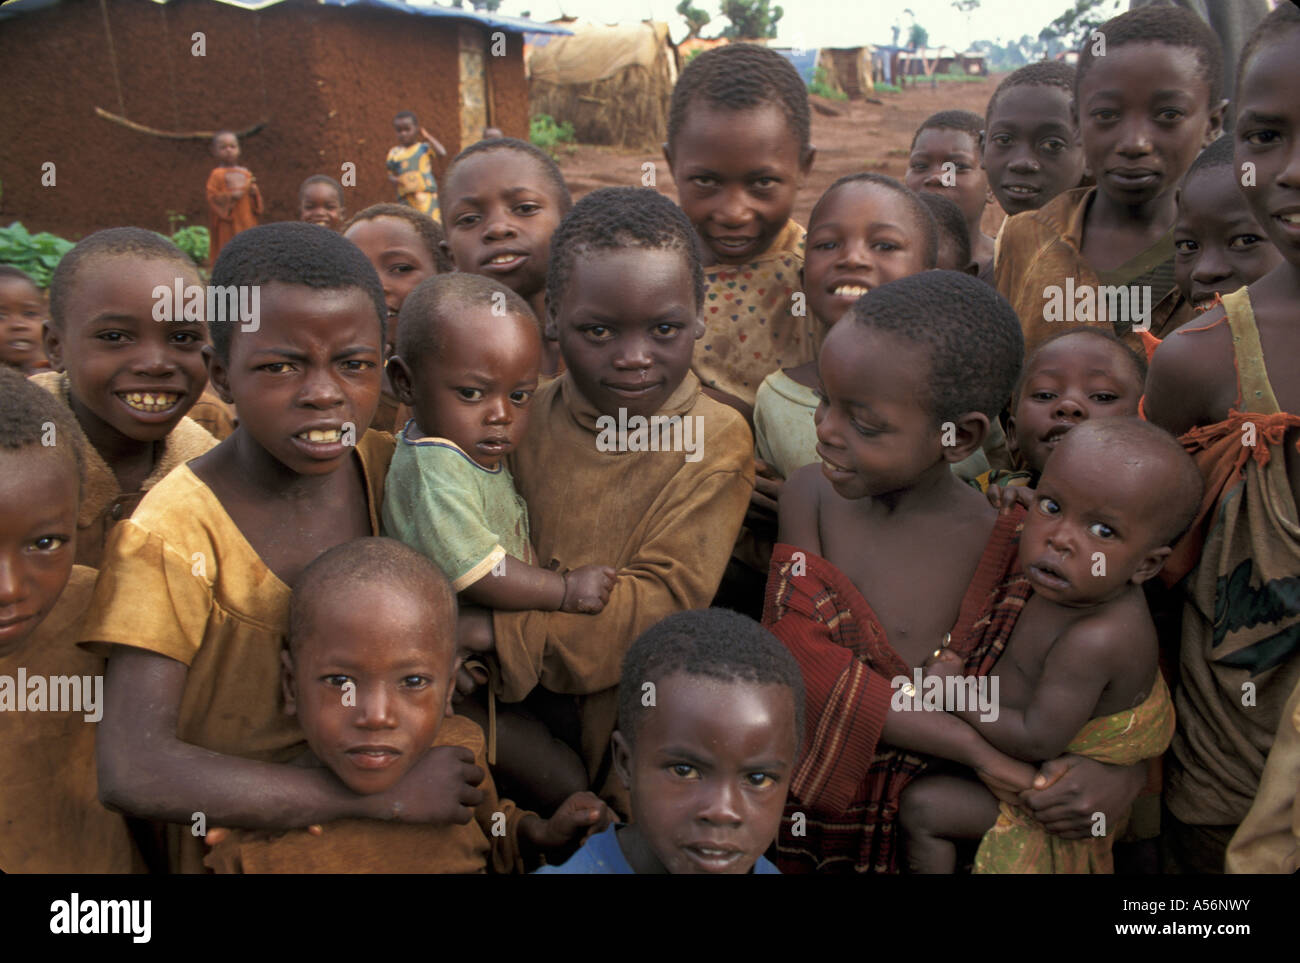 Painet iy8828 3044 tanzania hutu del Burundi refugges likole camp ngara paese nazione in via di sviluppo meno sviluppati dal punto di vista economico Foto Stock